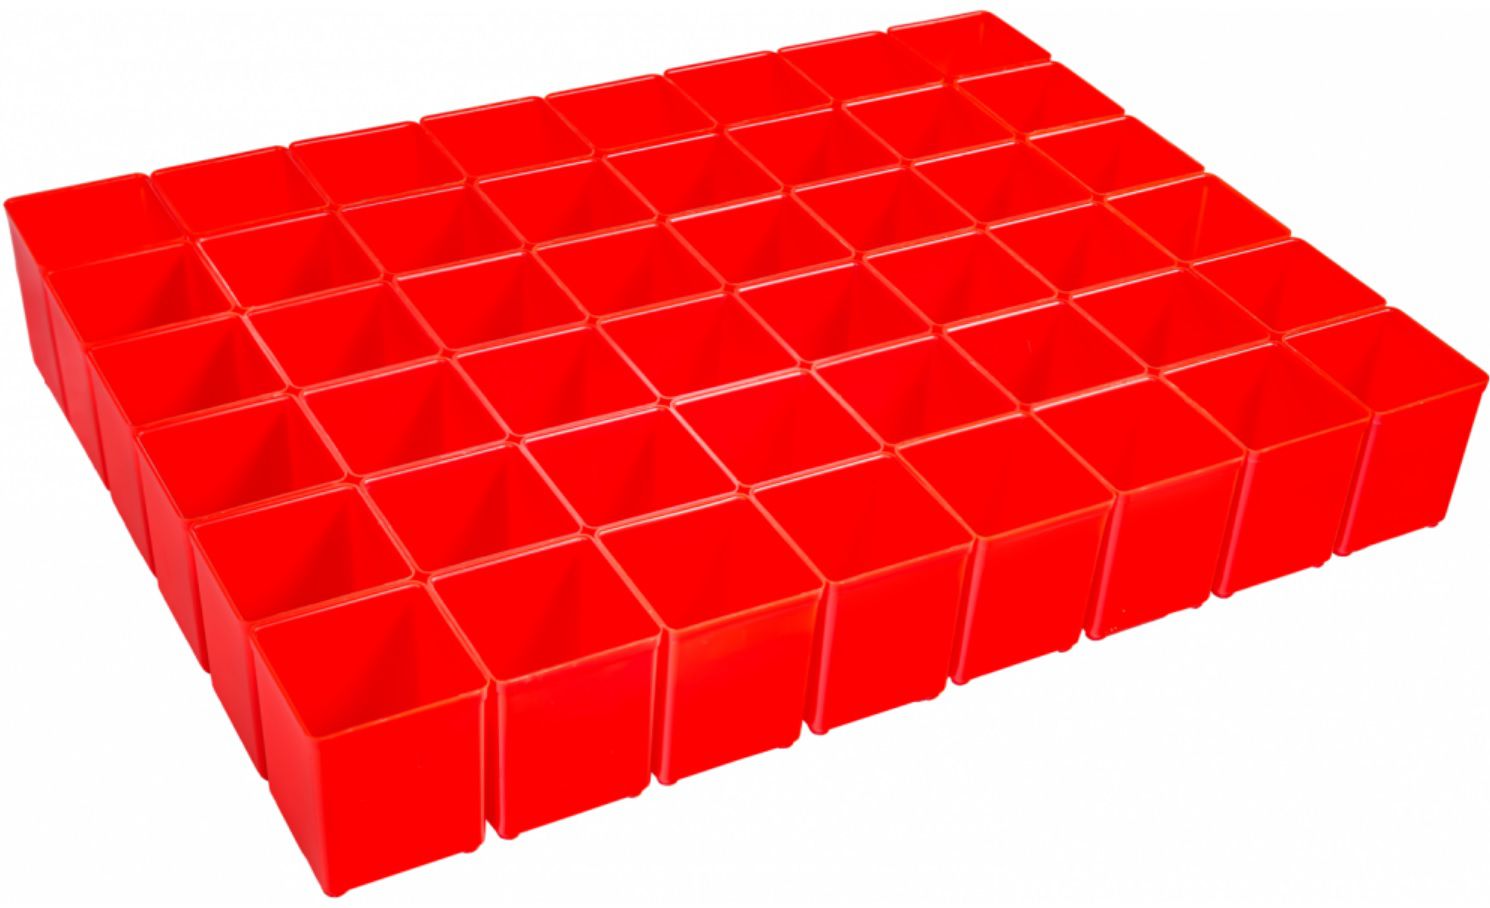 Insetbox A3 rot 48 St. 6000001817 - Werkzeugkoffer,Sortimentskoffer,Behälter